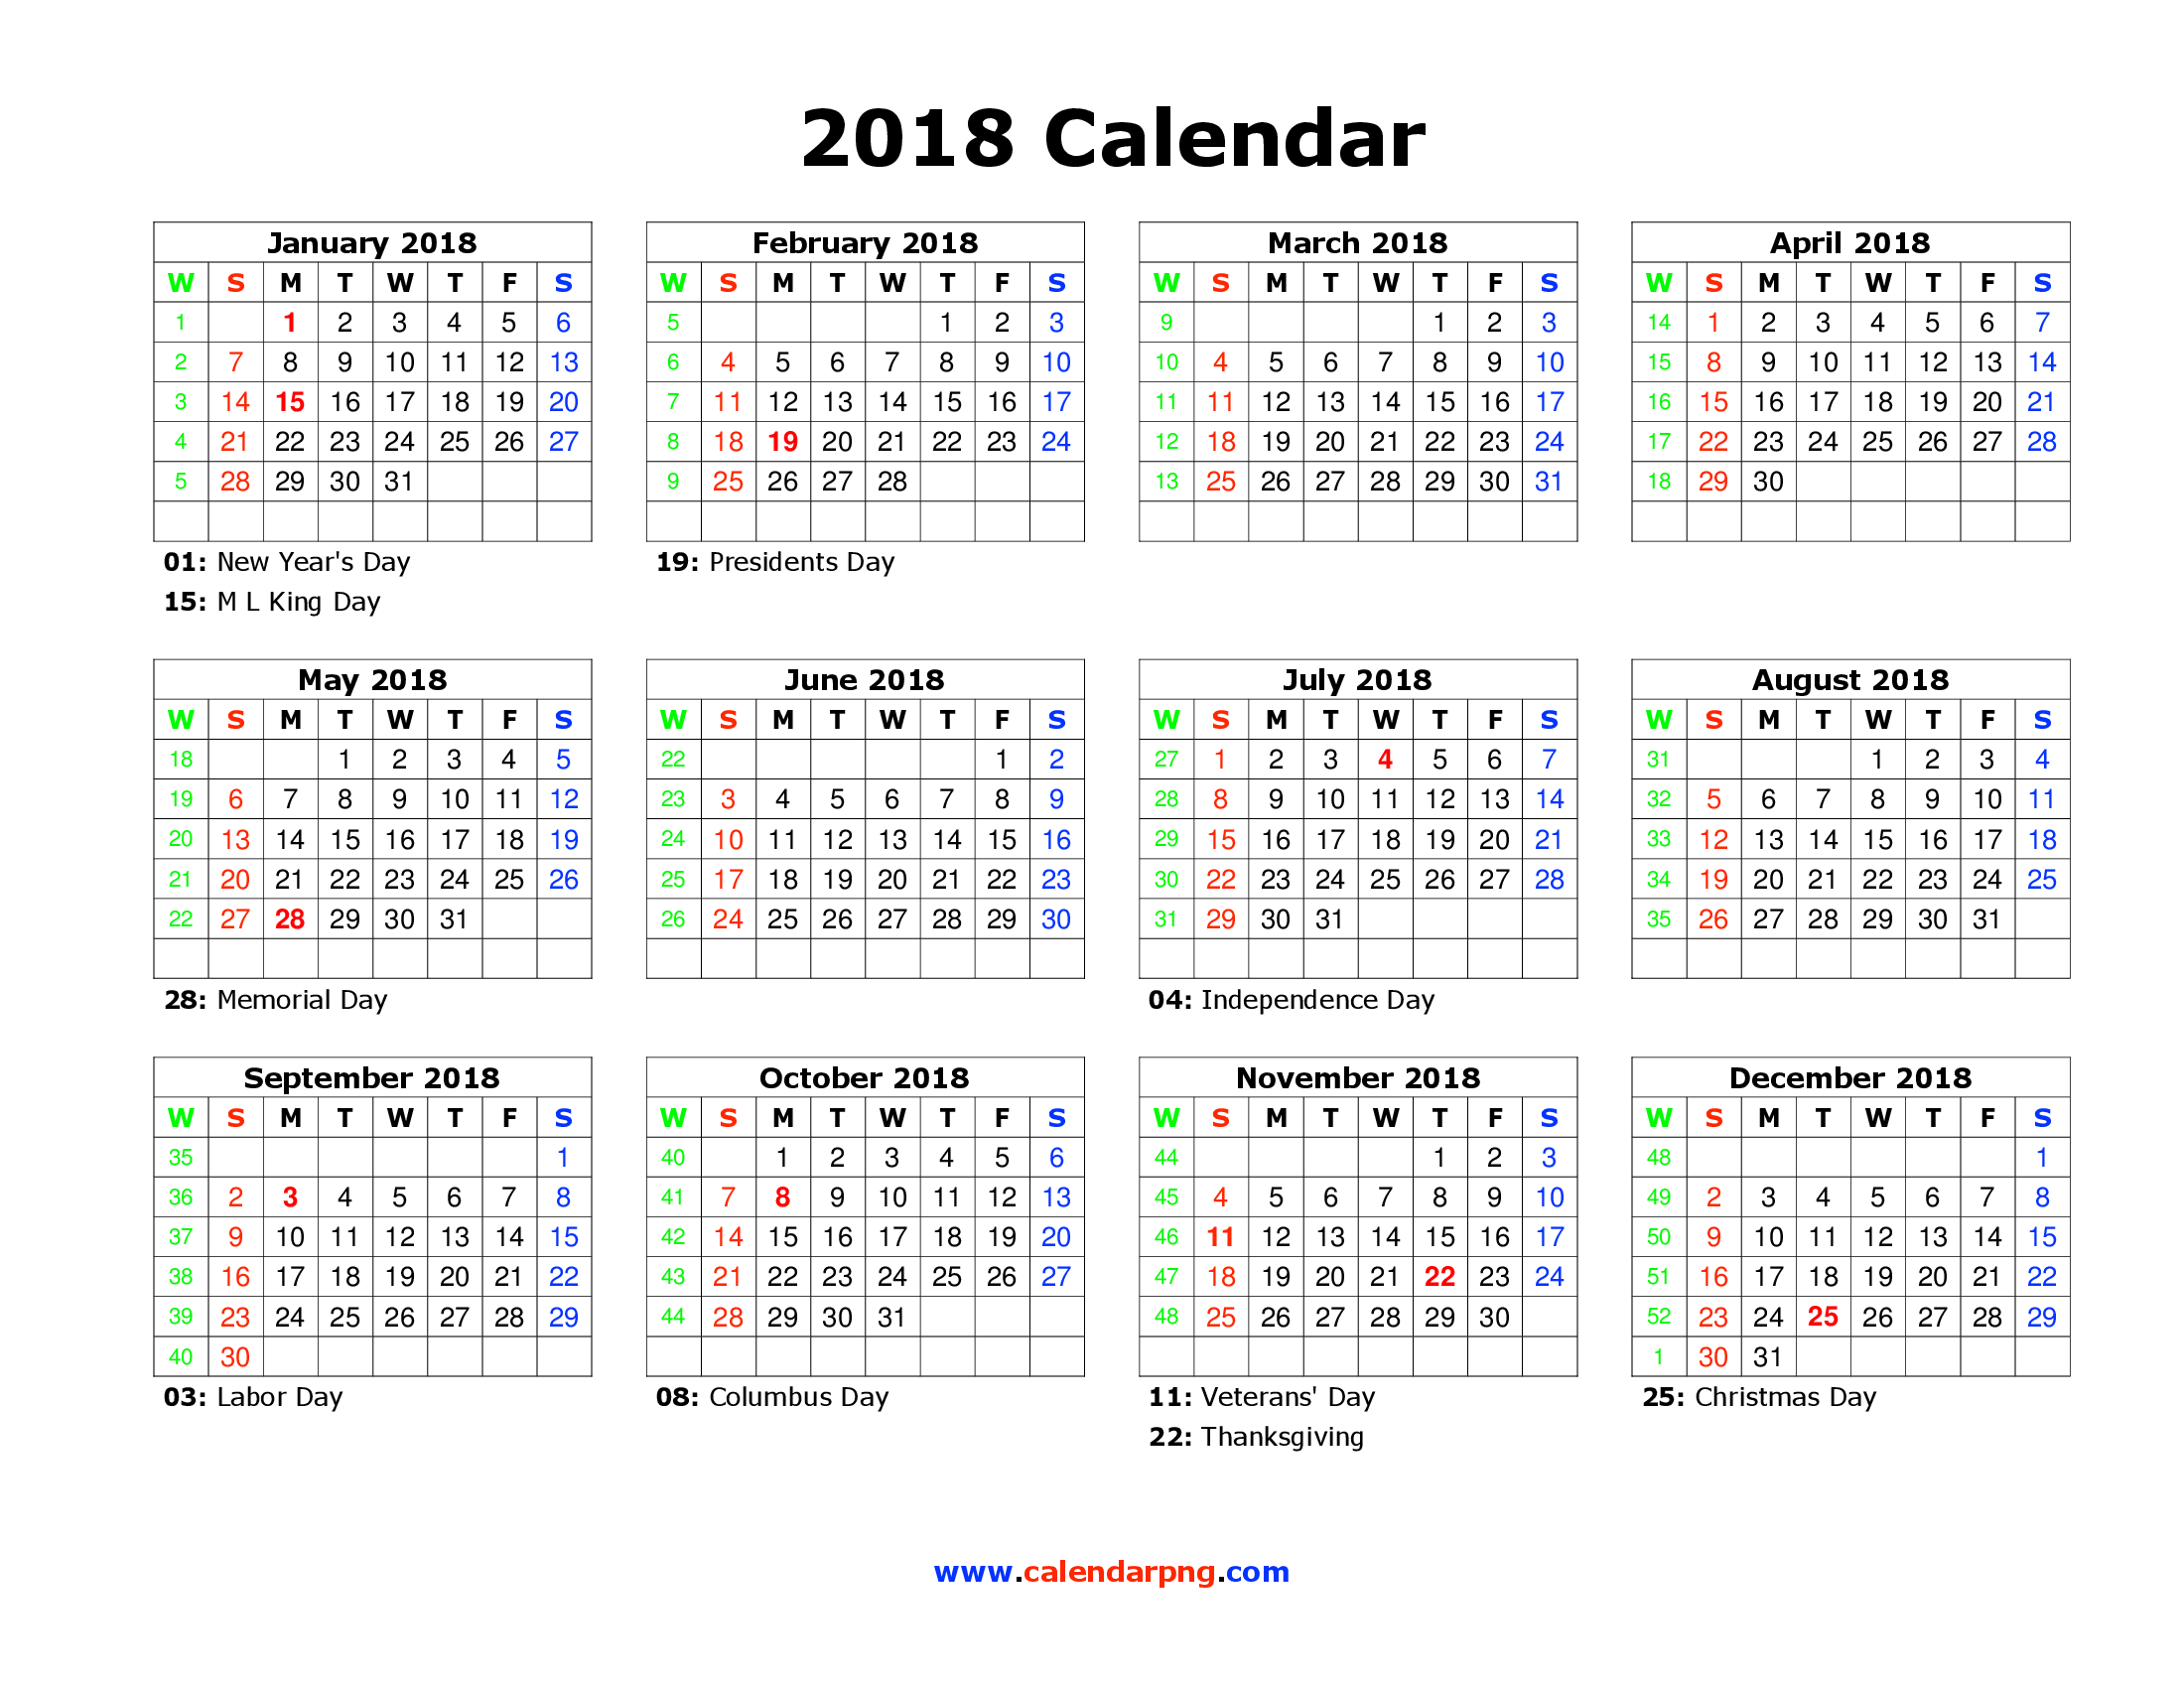 Calendar 2018 PNG File